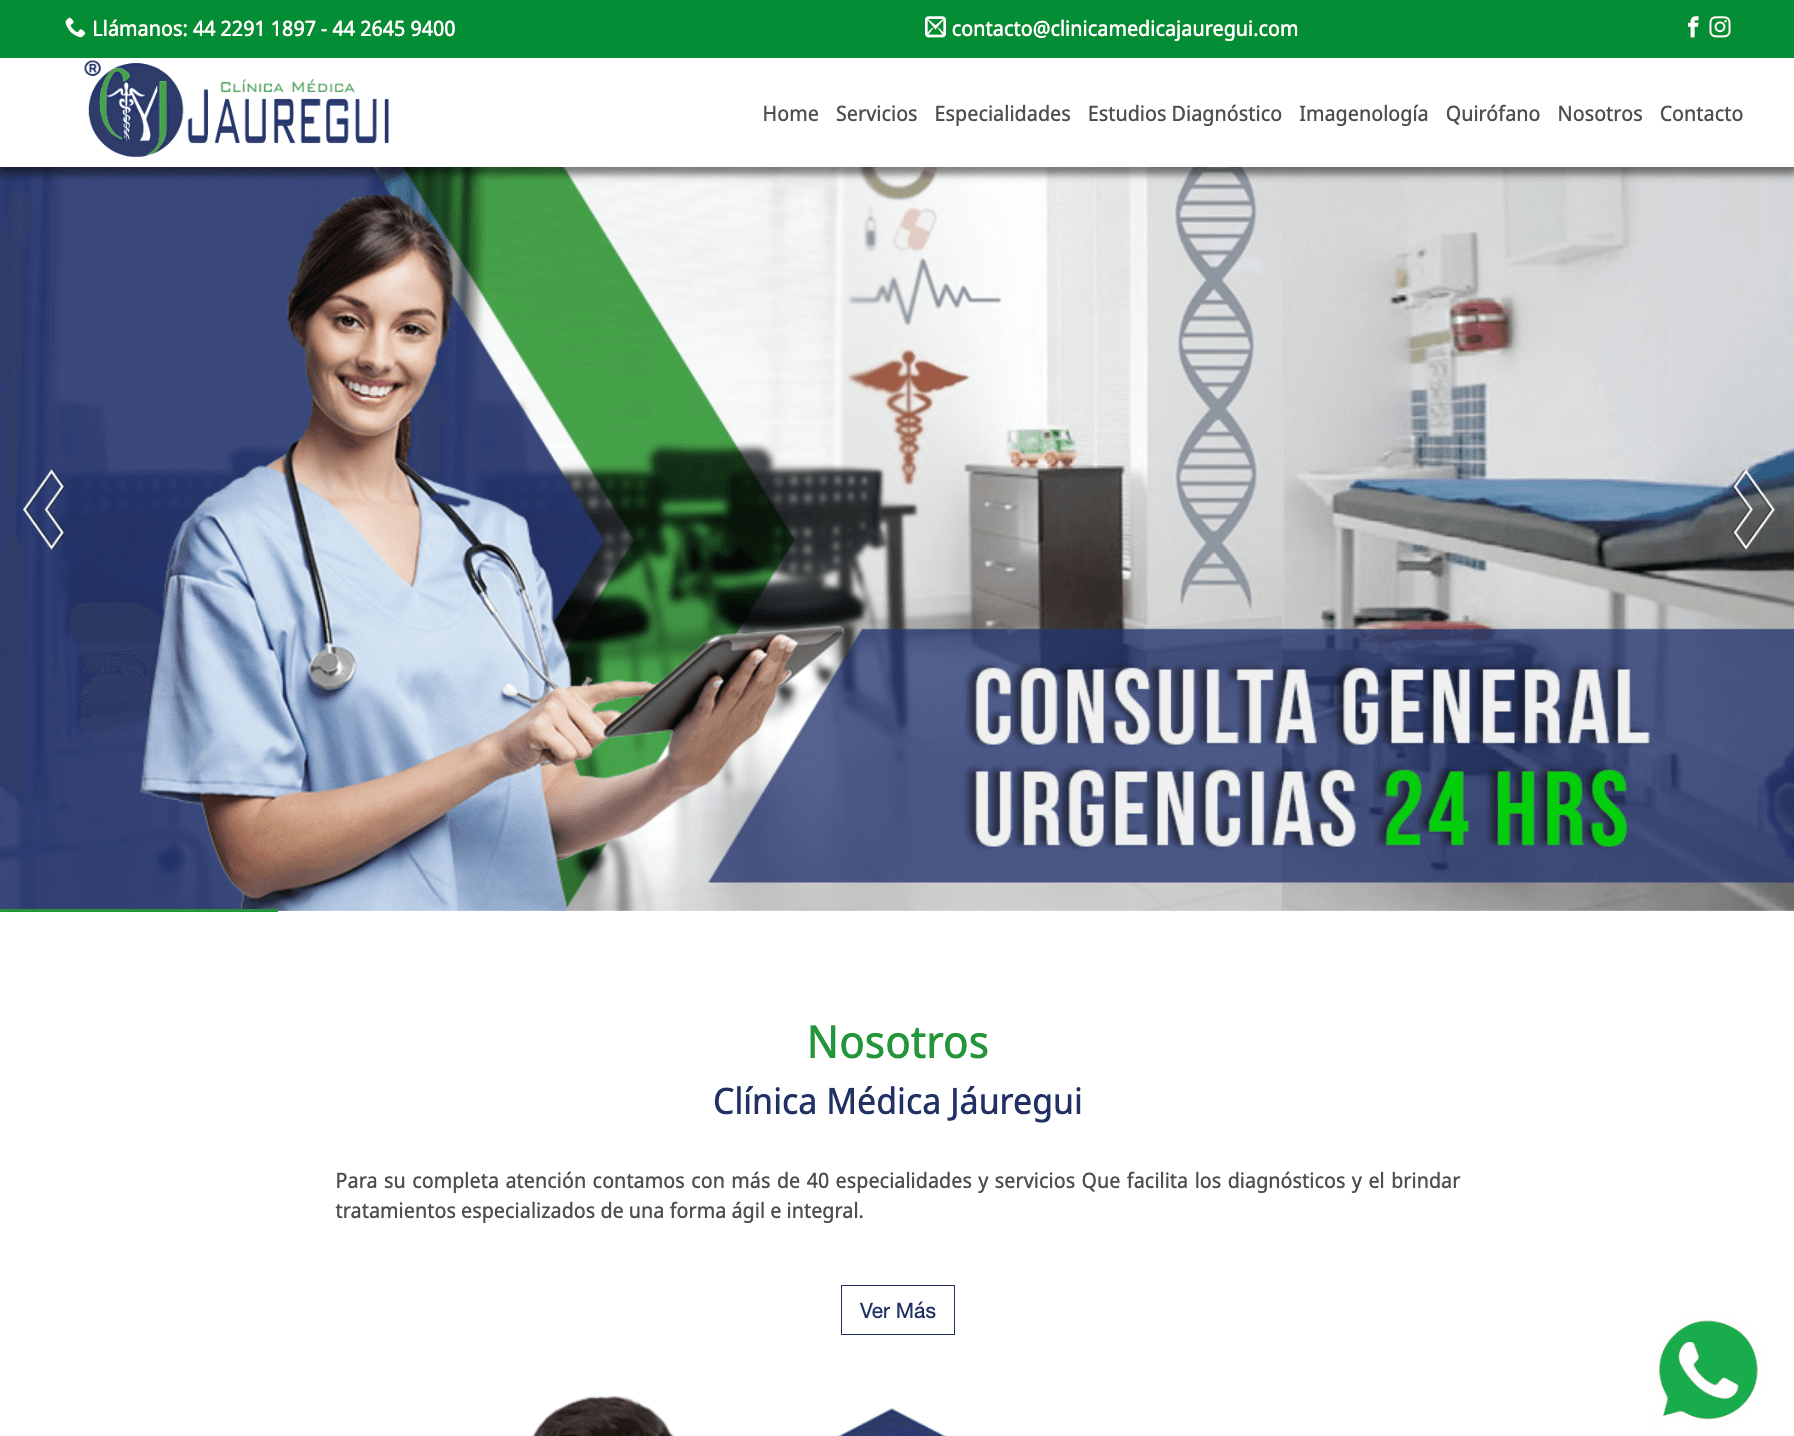 Clinica Jauregui